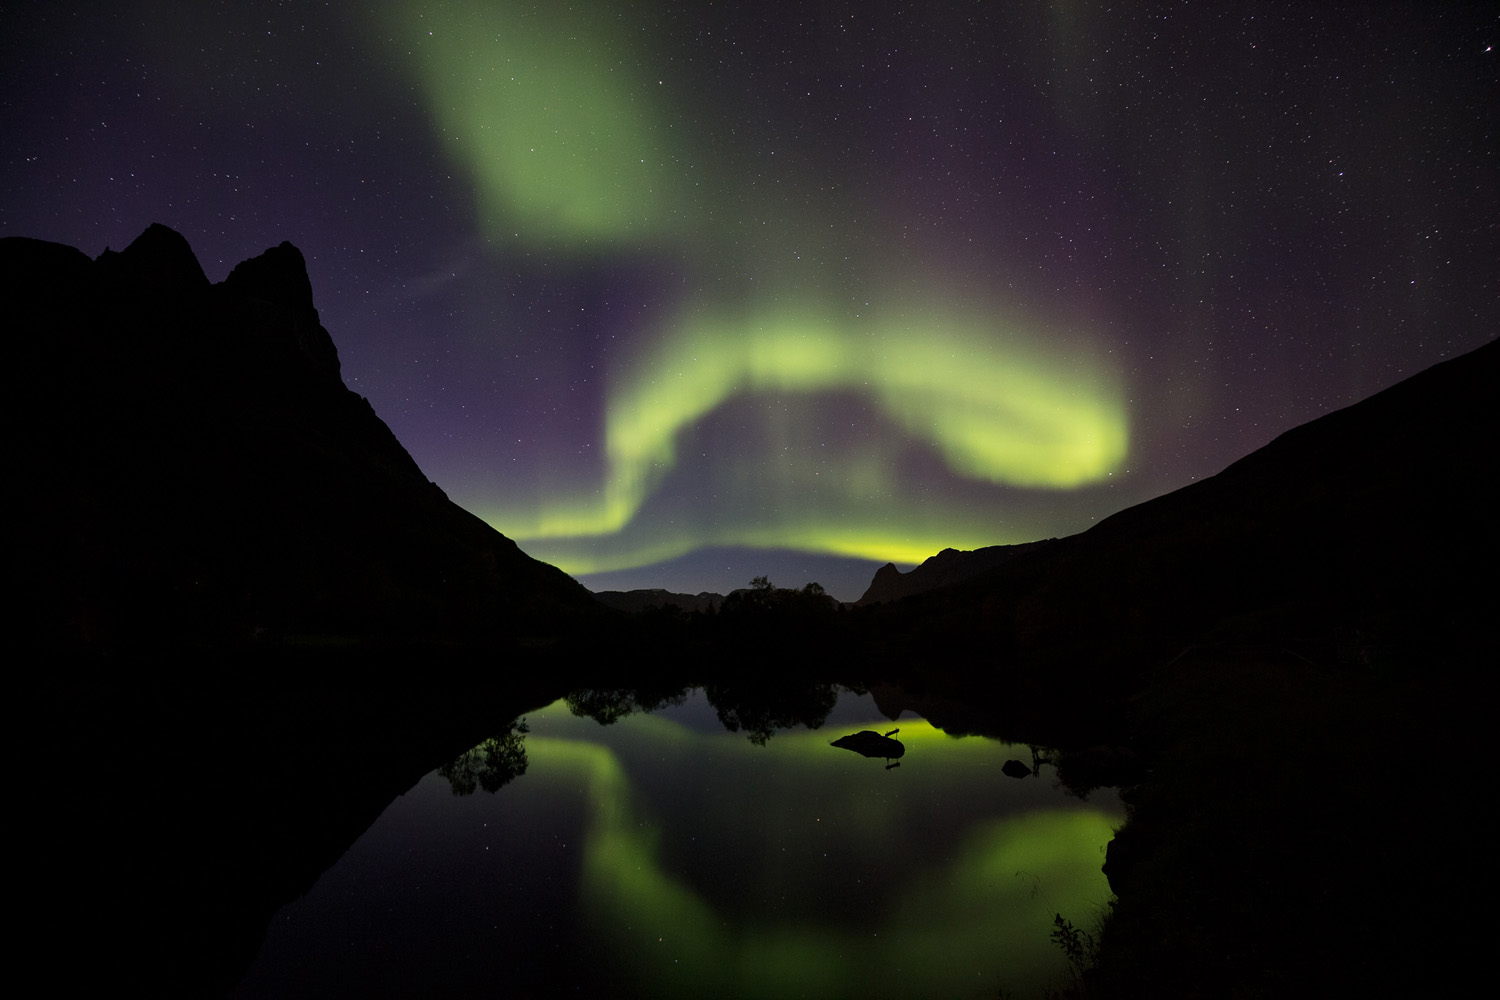 reflet d'aurore boréale lors d'un voyage photo dans les Alpes de Lyngen en automne, en Norvège